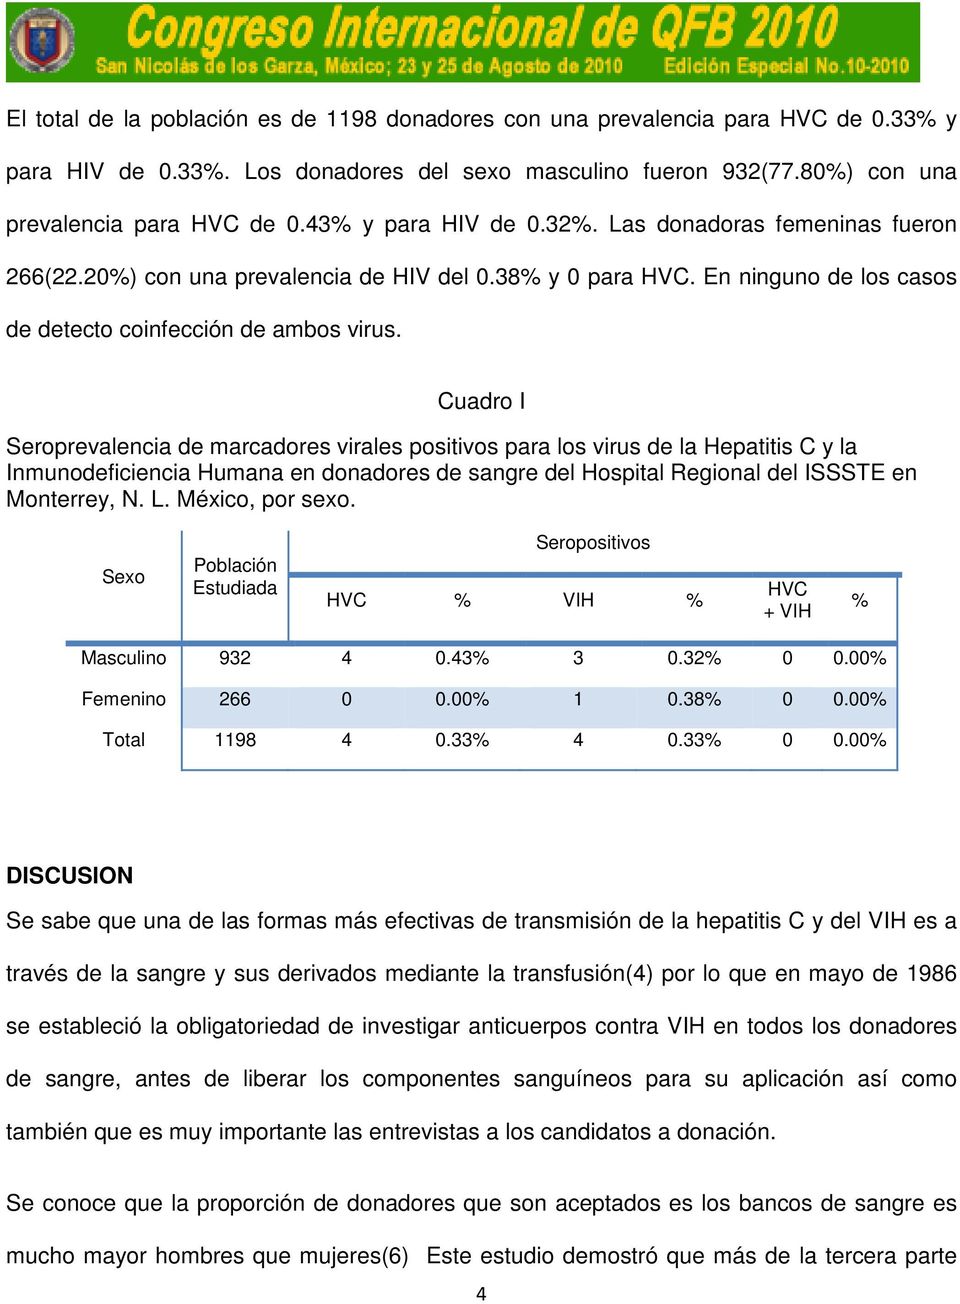 Cuadro I Seroprevalencia de marcadores virales positivos para los virus de la Hepatitis C y la Inmunodeficiencia Humana en donadores de sangre del Hospital Regional del ISSSTE en Monterrey, N. L.